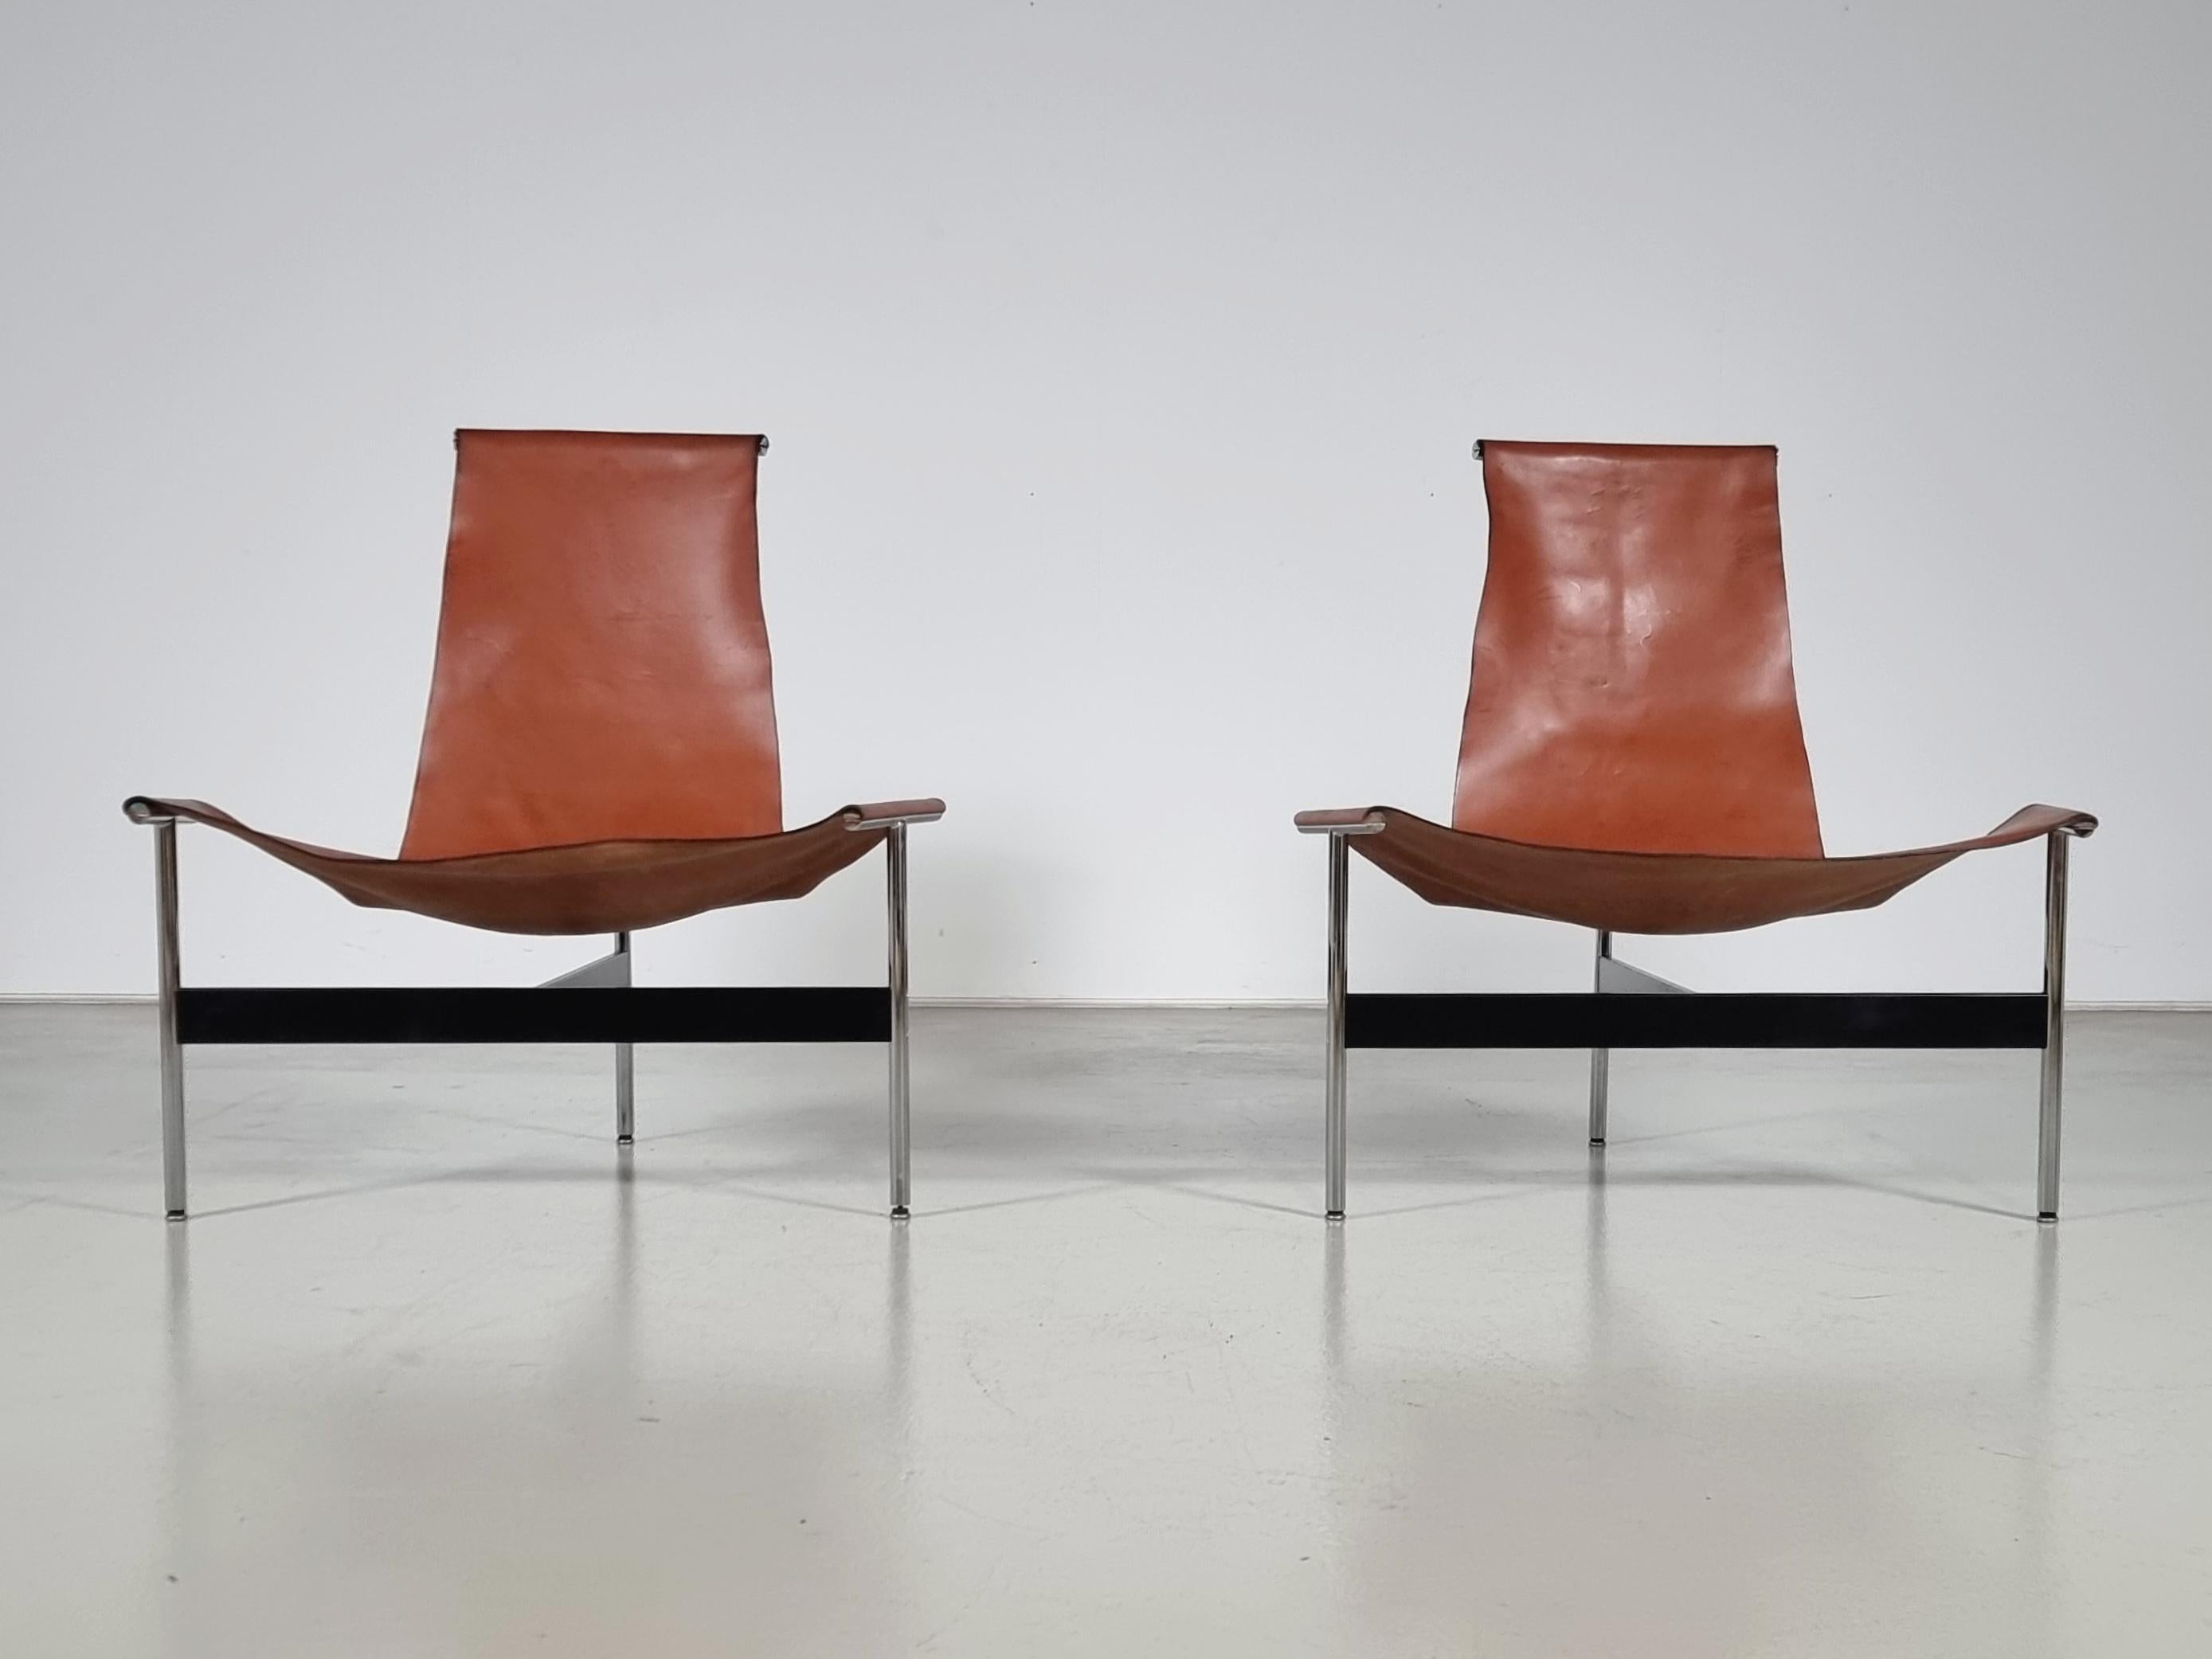 Seltene Lounge-Versionen der 3LC-Stühle, besser bekannt als T-Stühle. Verchromter und emaillierter Stahl mit Originalriemen aus cognacfarbenem Leder, entworfen von William Katavolos, Ross Littell und Douglas Kelley. Von Laverne Internationals 